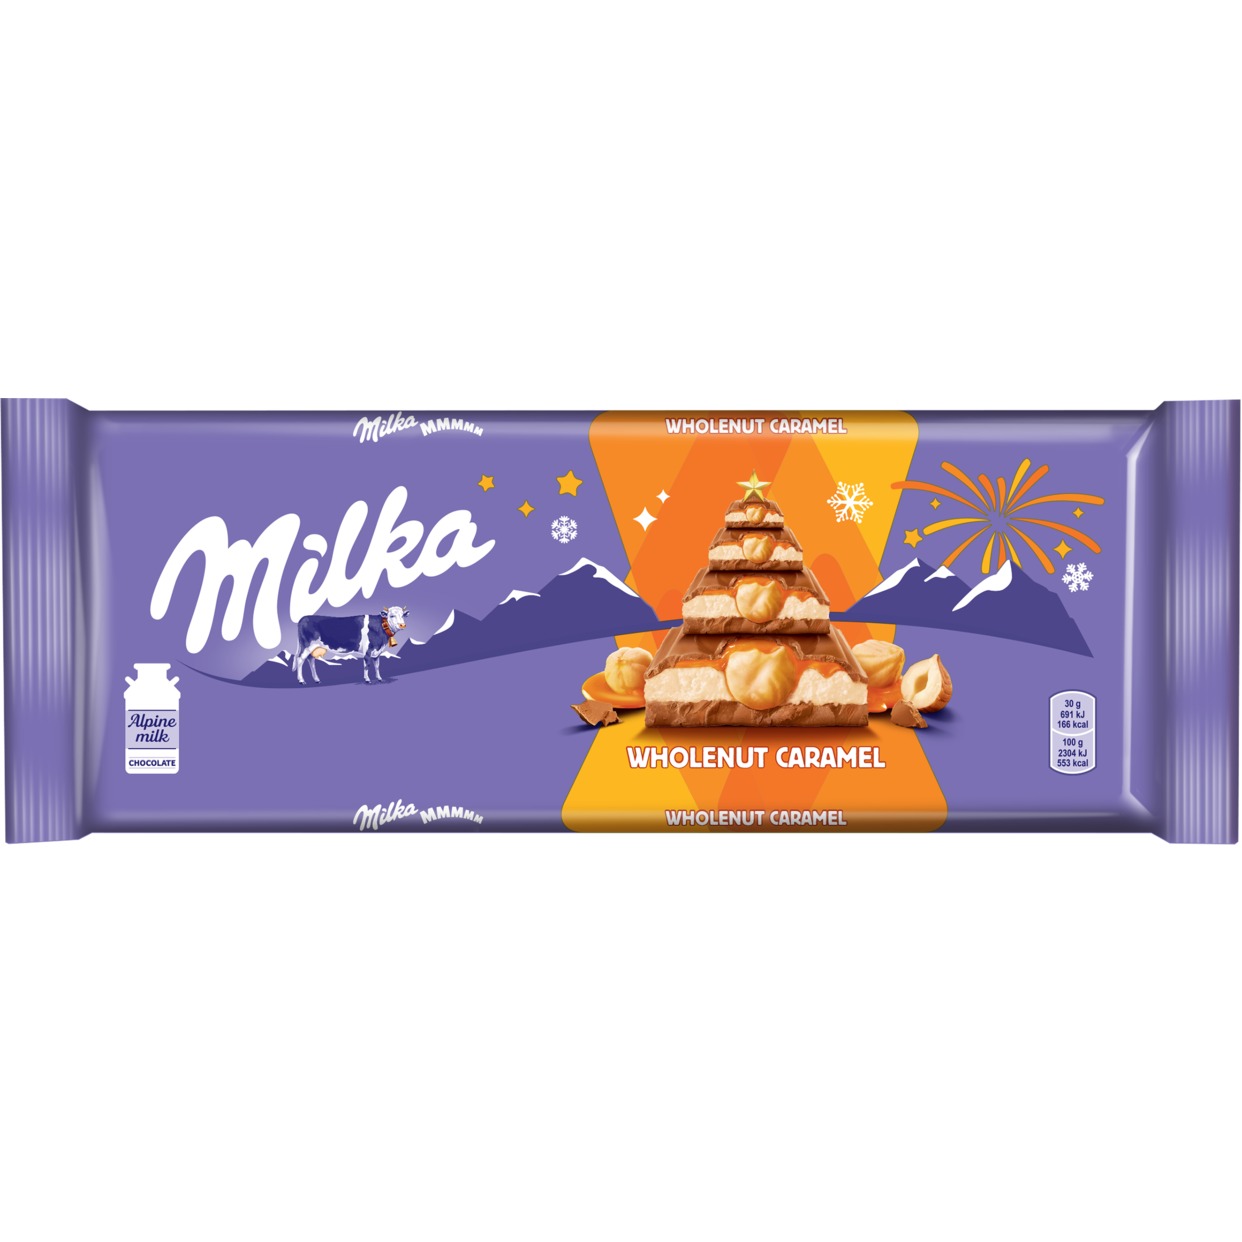 Шоколад Milka Wholenut Caramel Молочный с фундуком и карамелью 300г по акции в Пятерочке